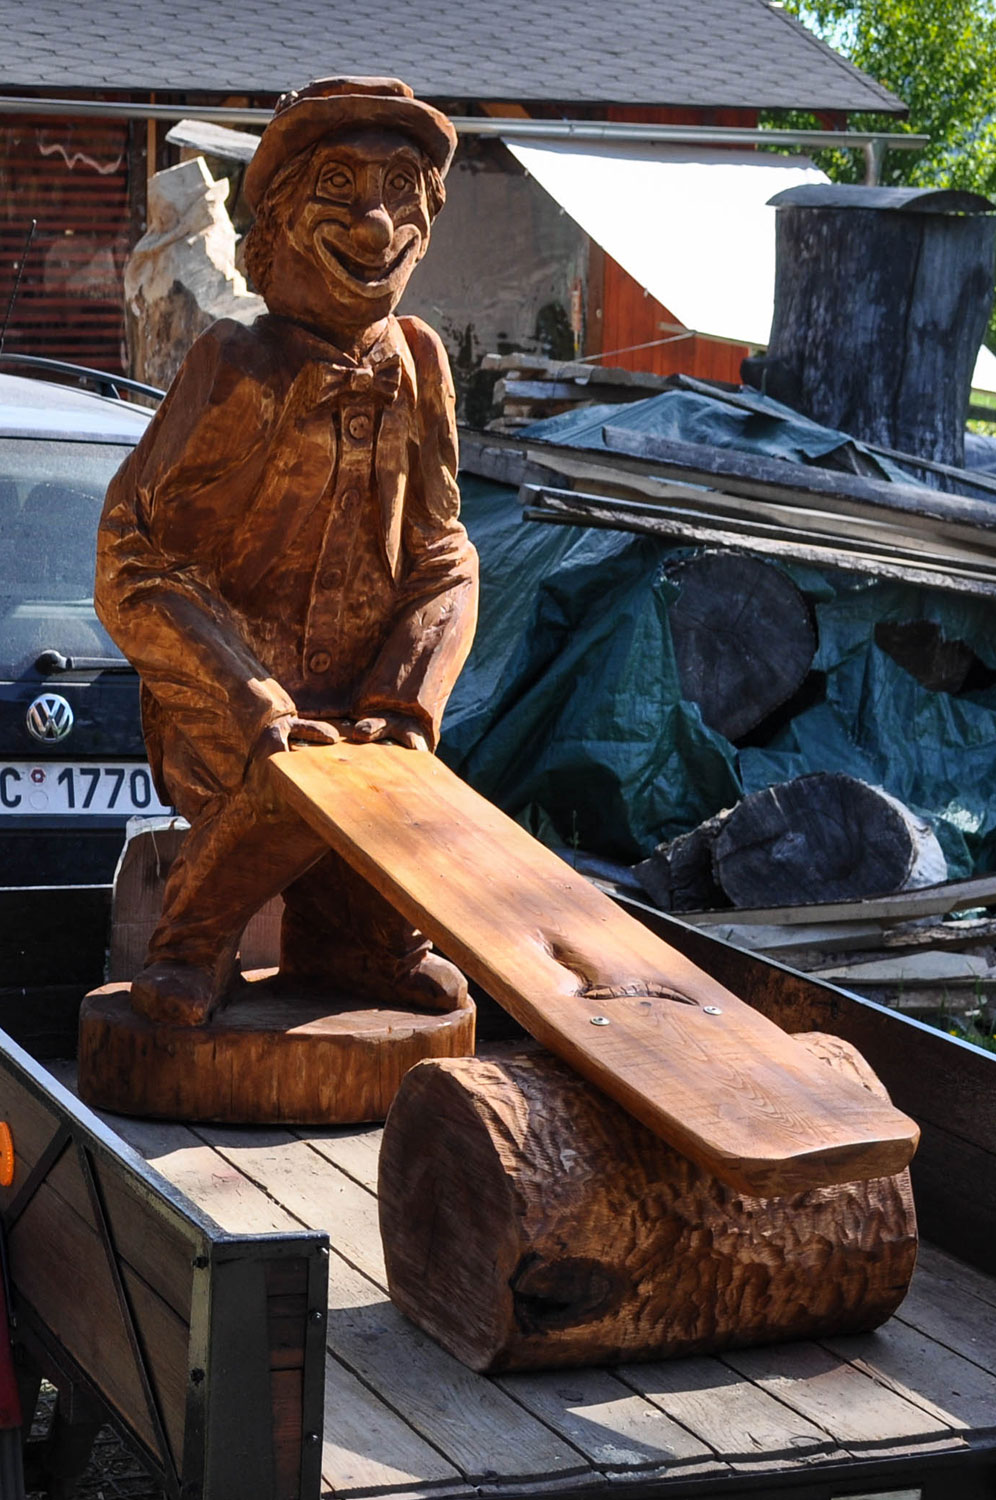 drevorezba-vyrezavani-carving-wood-drevo-socha-vceli-lavicka-klaun-radekzdrazil-20210531-013